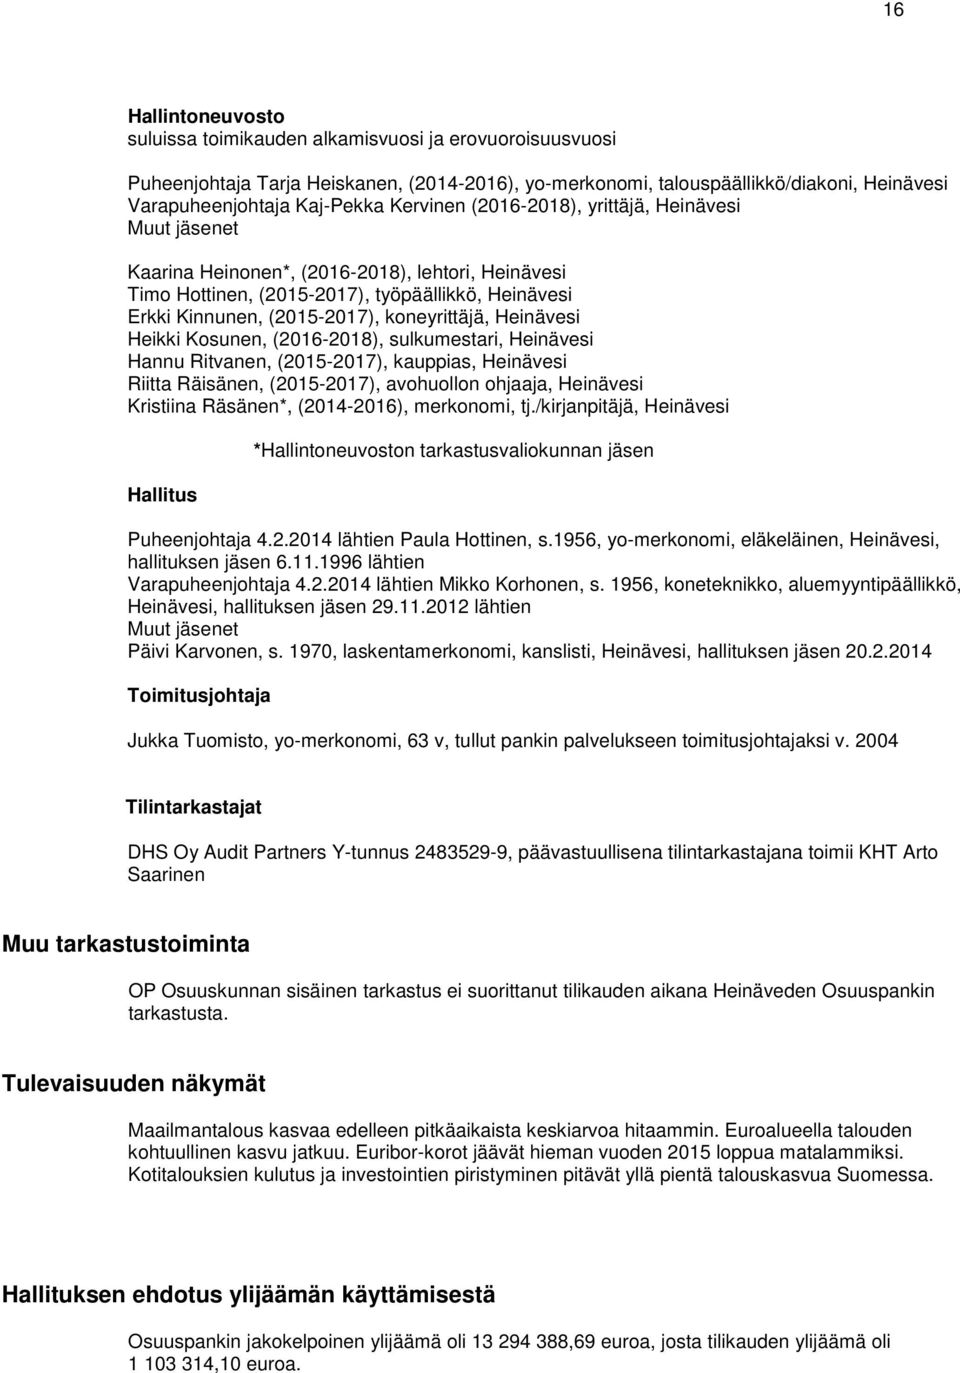 koneyrittäjä, Heinävesi Heikki Kosunen, (2016-2018), sulkumestari, Heinävesi Hannu Ritvanen, (2015-2017), kauppias, Heinävesi Riitta Räisänen, (2015-2017), avohuollon ohjaaja, Heinävesi Kristiina